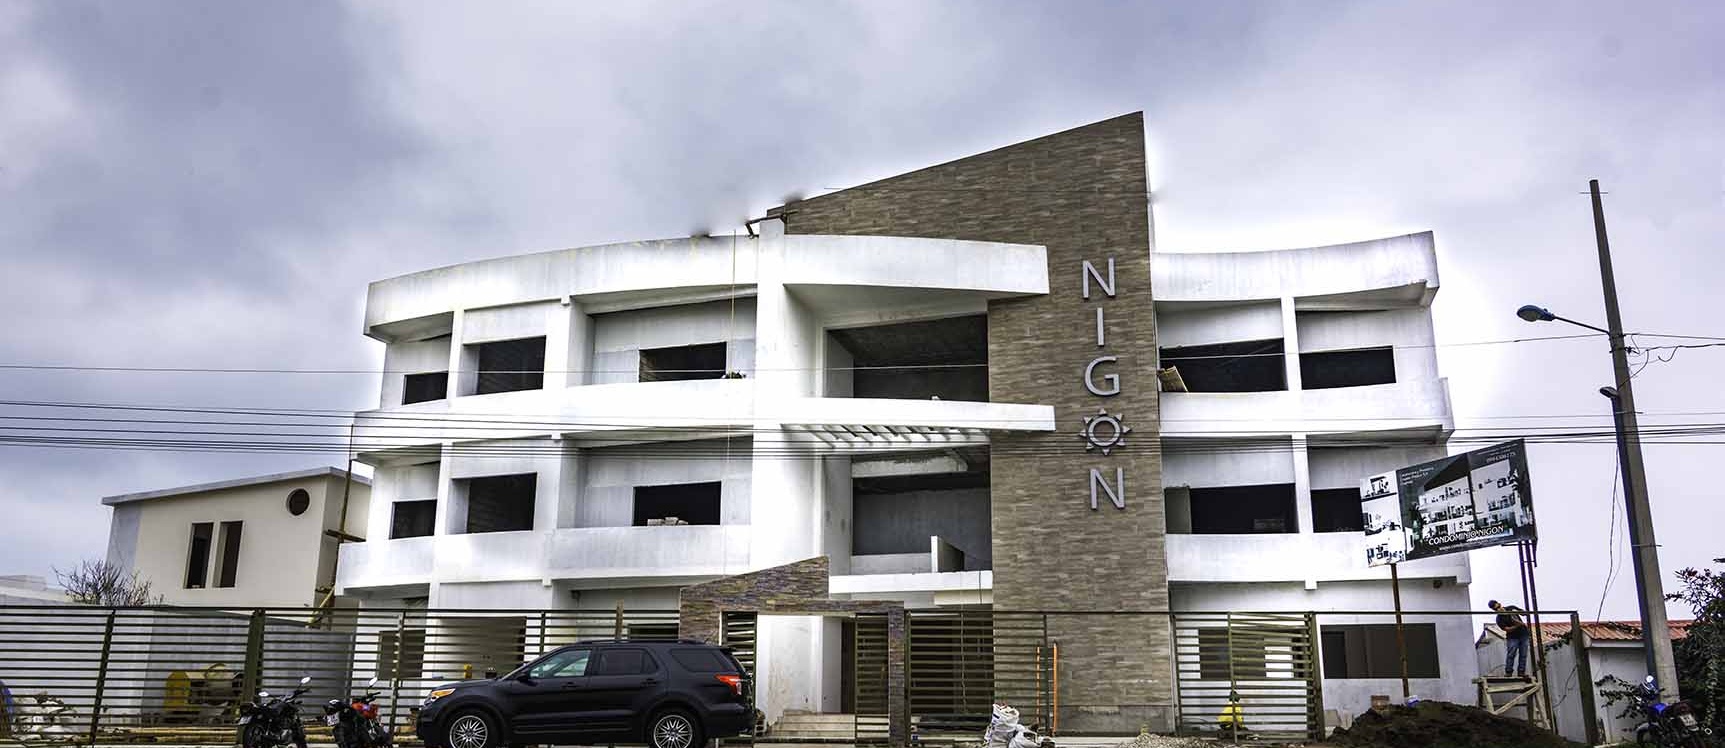 GeoBienes - Departamento en venta Condominio Nigon en Capaes Santa Elena - Plusvalia Guayaquil Casas de venta y alquiler Inmobiliaria Ecuador